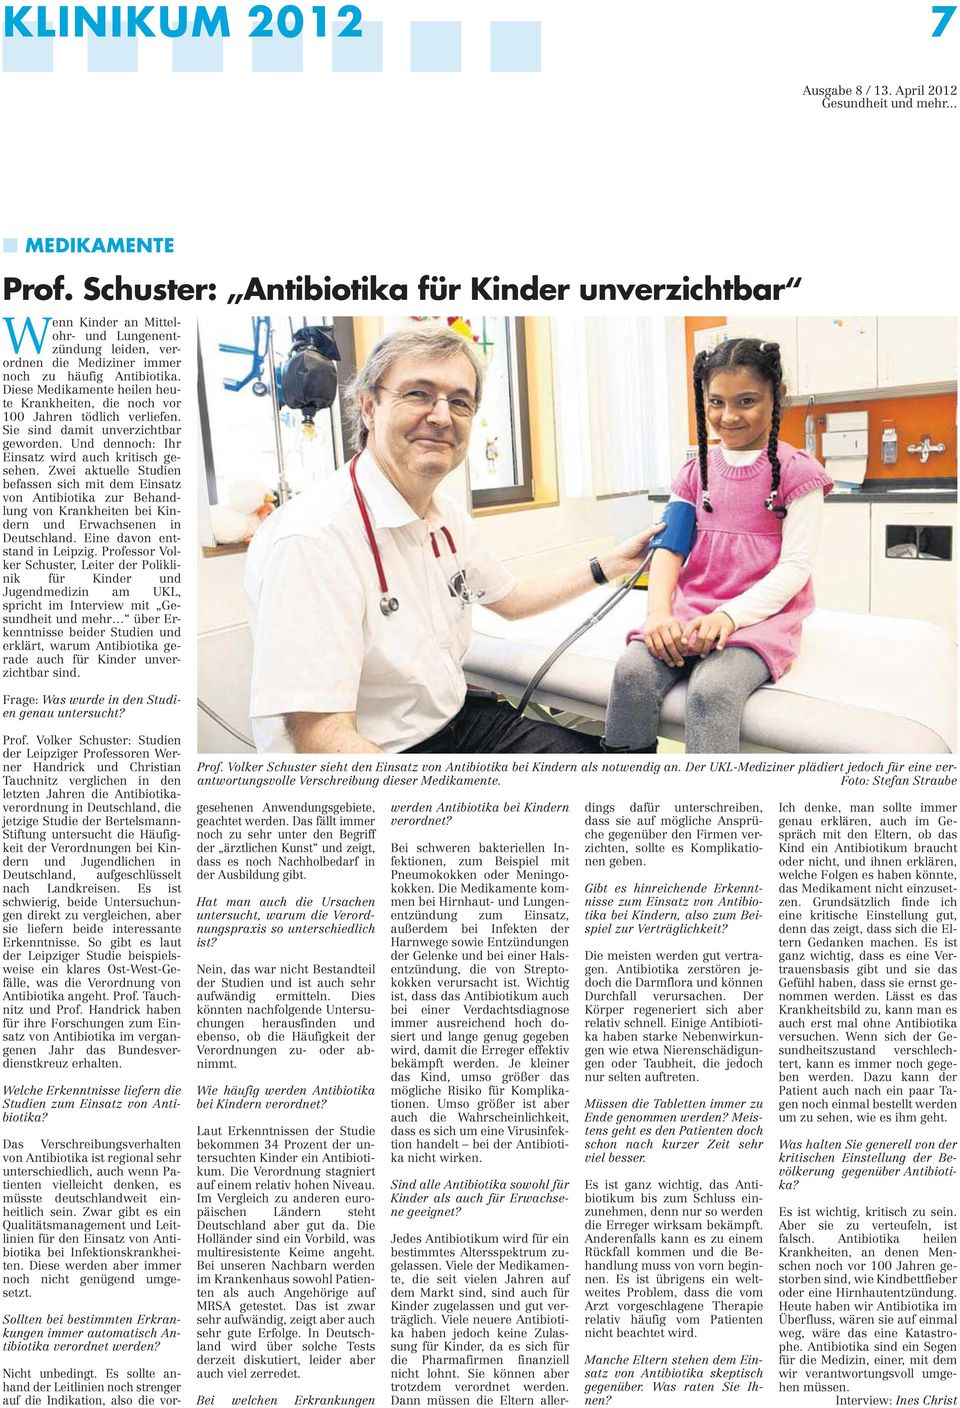 Zwei aktuelle Studien befassen sich mit dem Einsatz von Antibiotika zur Behandlung von Krankheiten bei Kindern und Erwachsenen in Deutschland. Eine davon entstand in Leipzig.